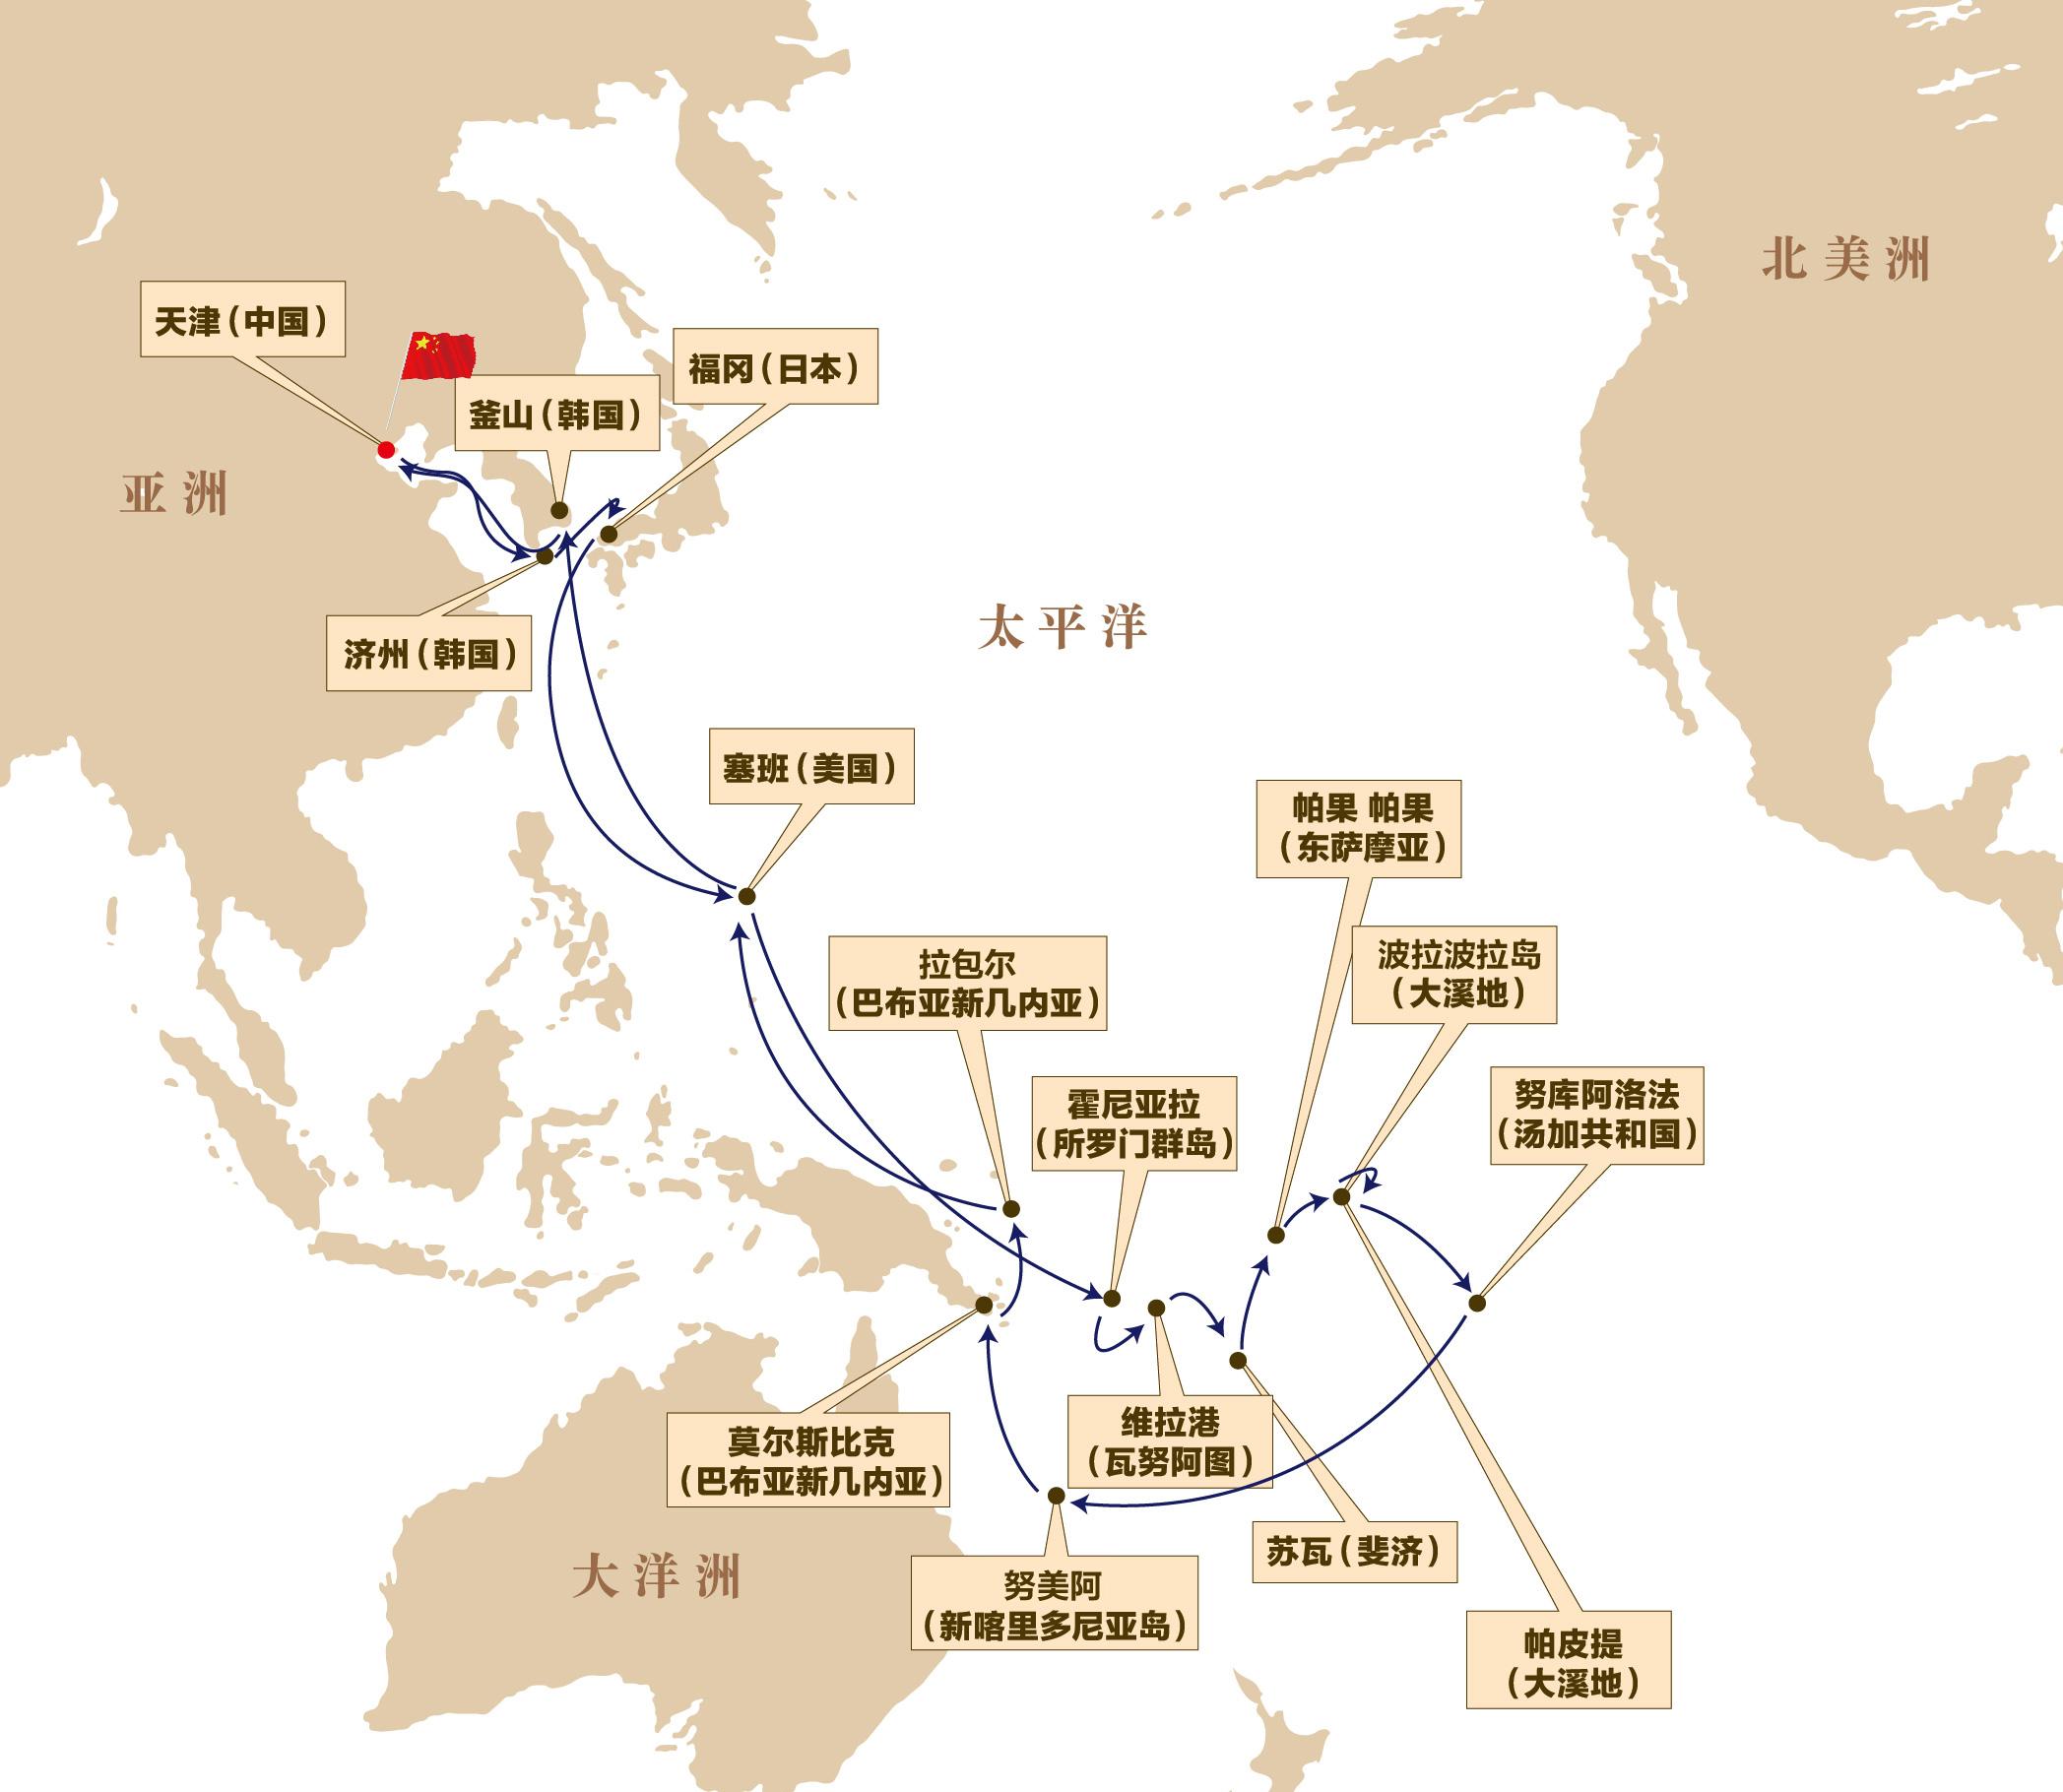 中國航空航線地圖展示_全國飛機航線圖 - 神拓網